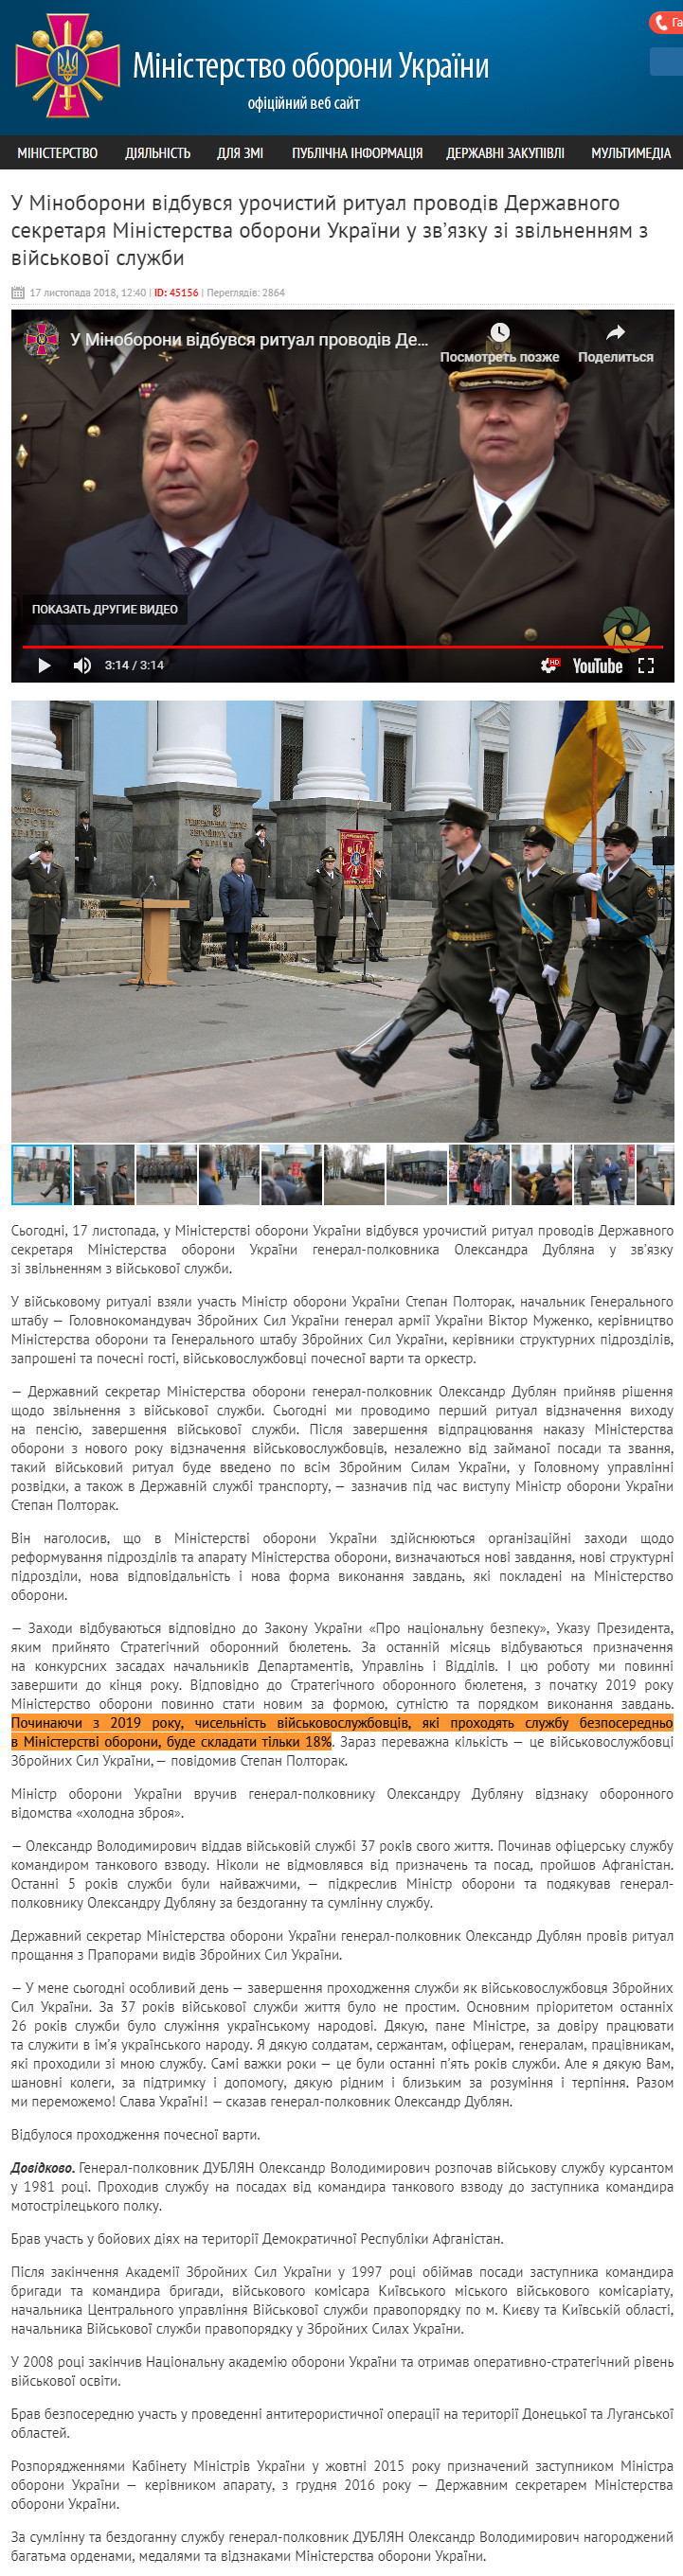 http://www.mil.gov.ua/news/2018/11/17/u-minoboroni-vidbuvsya-urochistij-ritual-provodiv-derzhavnogo-sekretarya-ministerstva-oboroni-ukraini-u-zvyazku-zi-zvilnennyam-z-vijskovoi-sluzhbi/